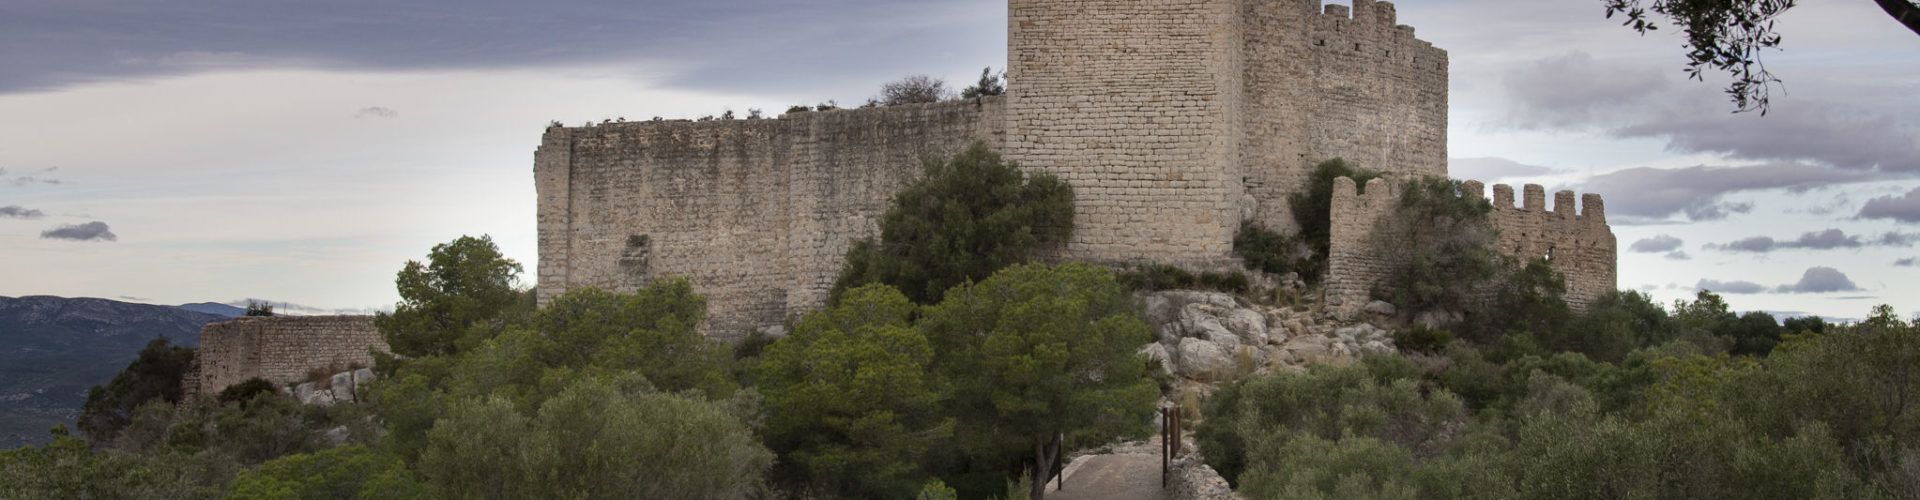 La Diputació de Castelló impulsa el projecte cultural ‘Els teus castells’ per a donar a conéixer la història dels castells de Xivert i Polpís